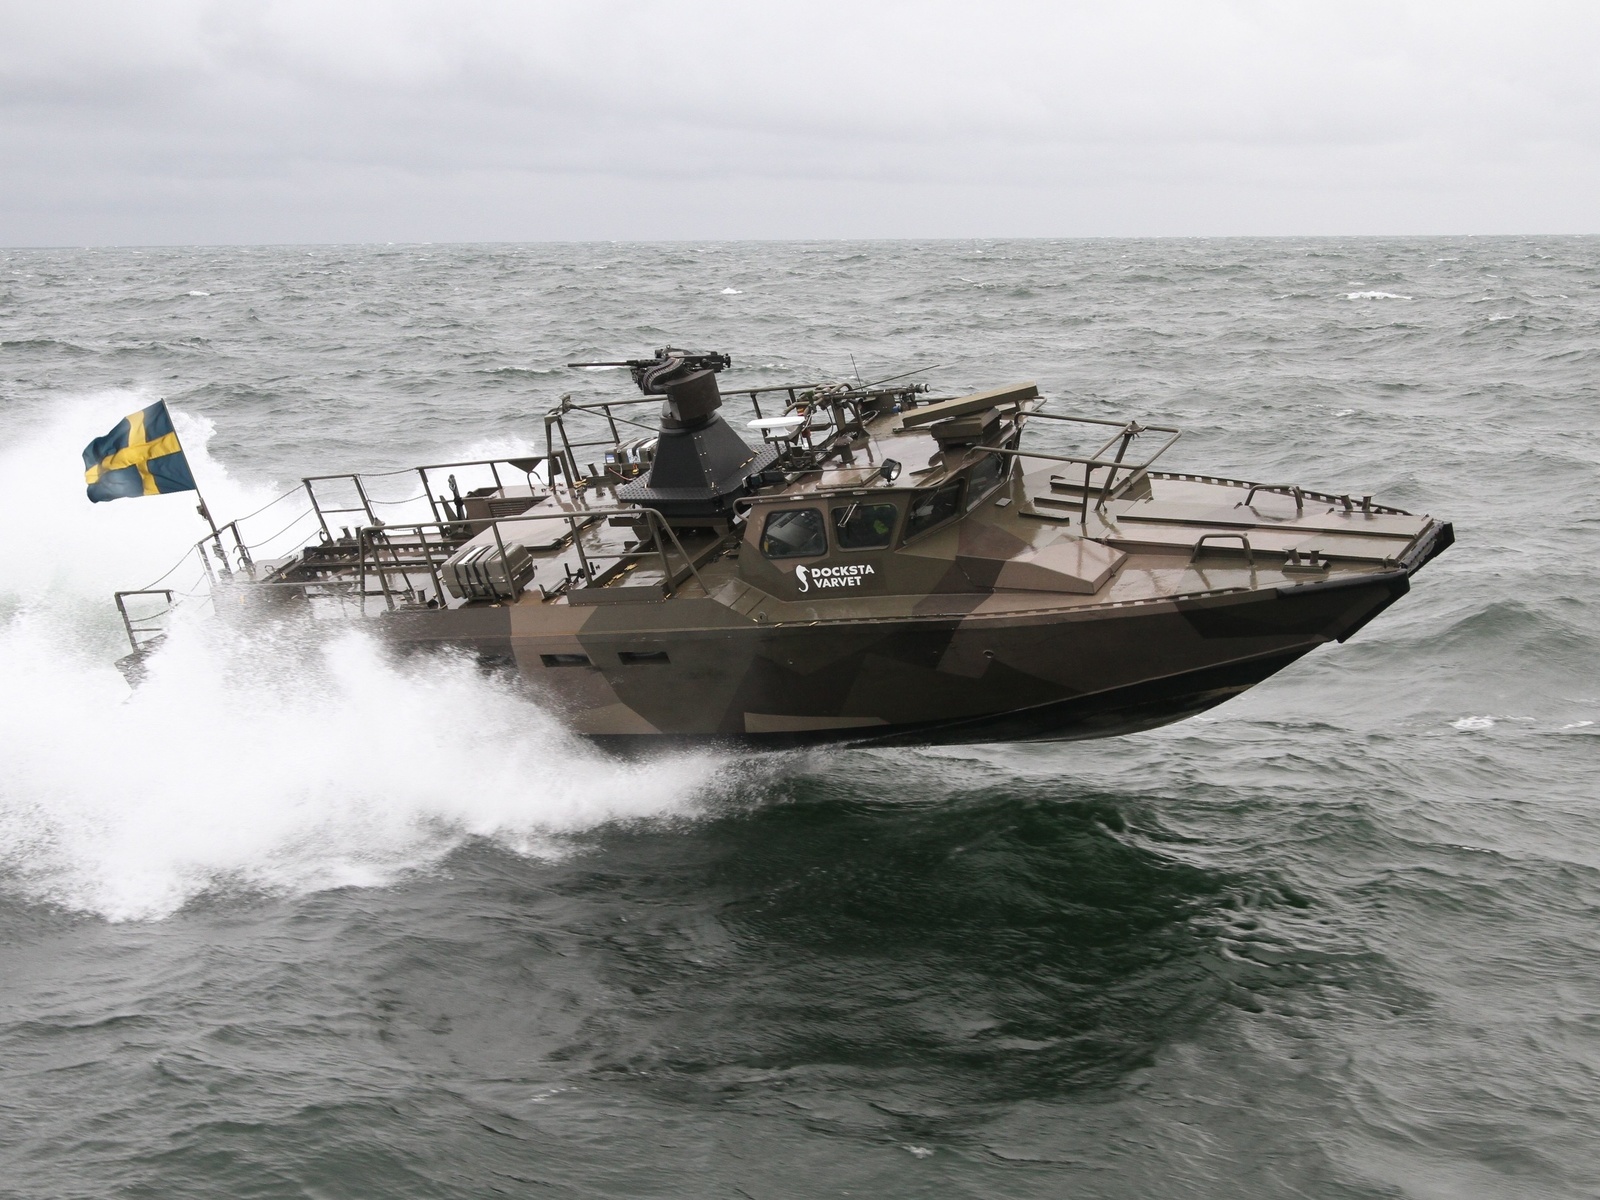 saab, combat boat, docksta cb90